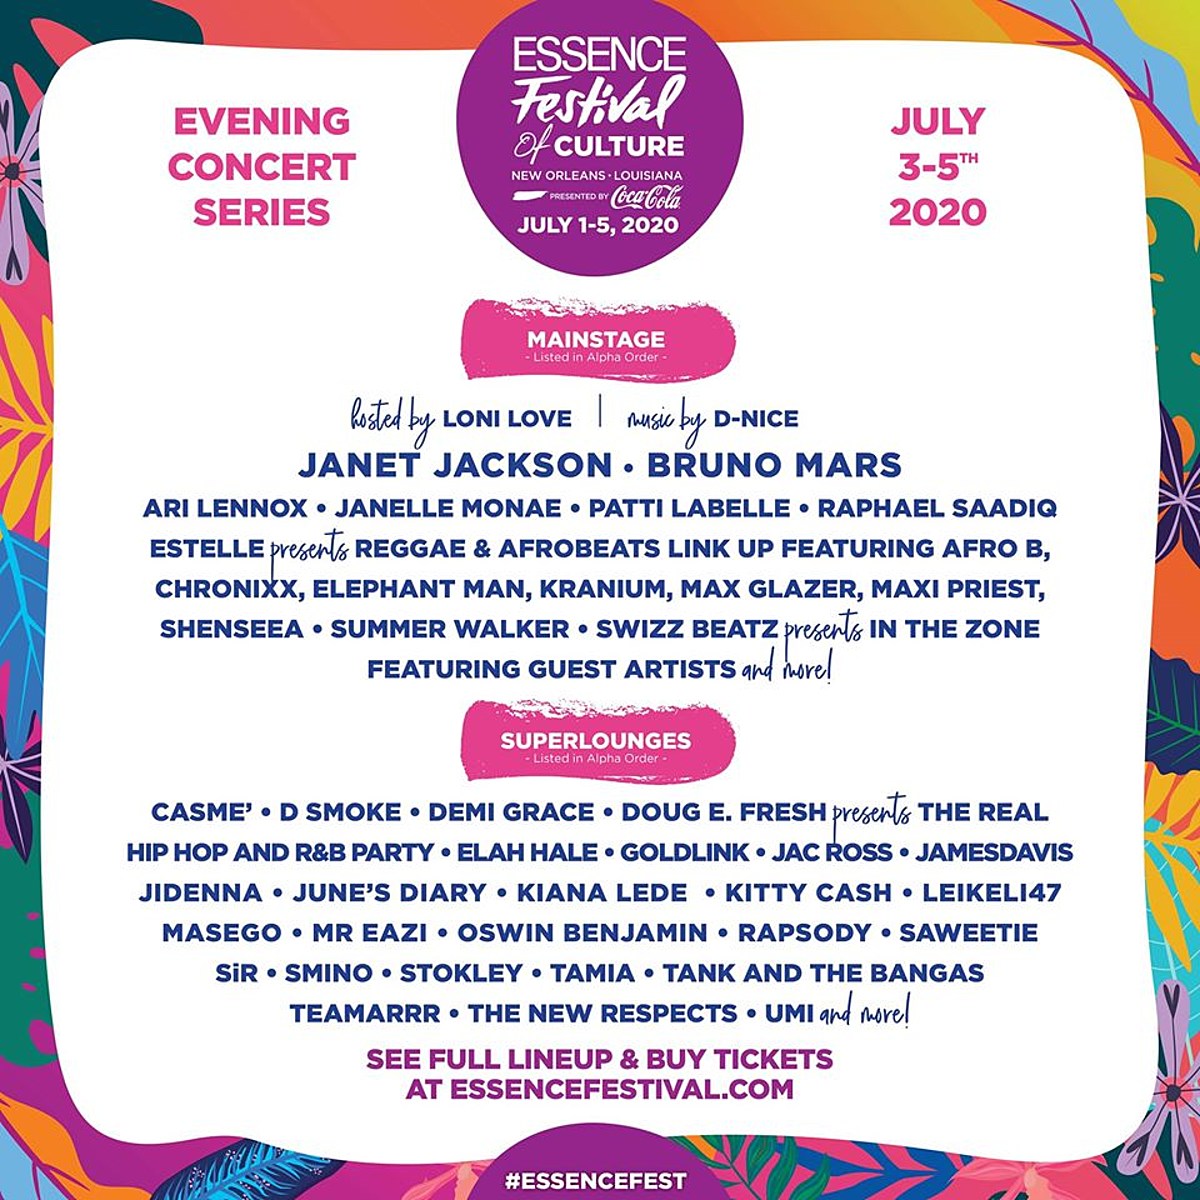 Essence Fest 2020 lineup Jackson, Janelle Monae, Patti LaBelle